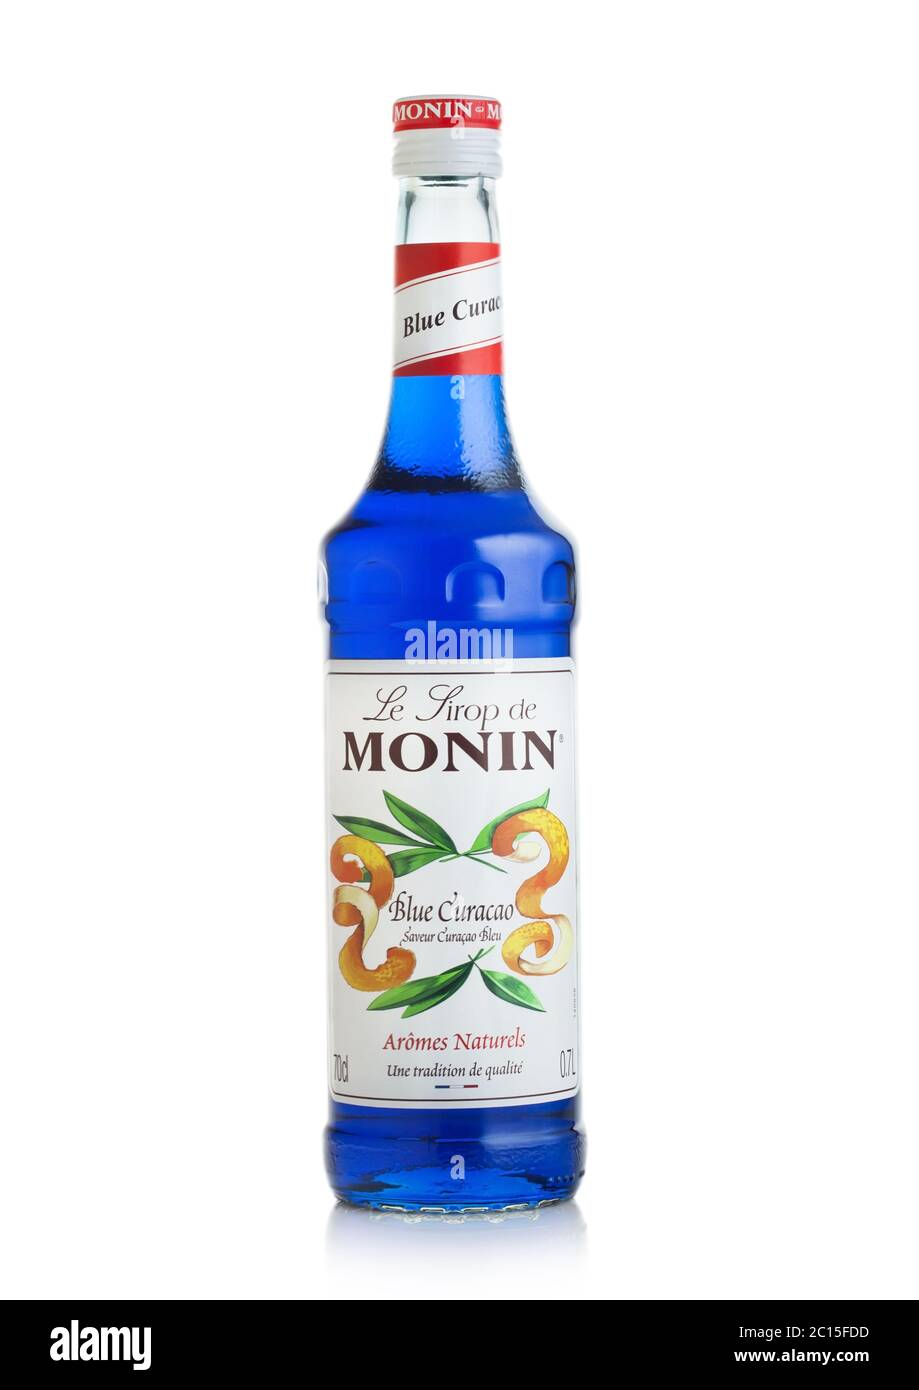 LONDRES, Royaume-Uni - 02 JUIN 2020 : bouteille de sirop de Curaçao bleu de  Monin sur fond blanc Photo Stock - Alamy